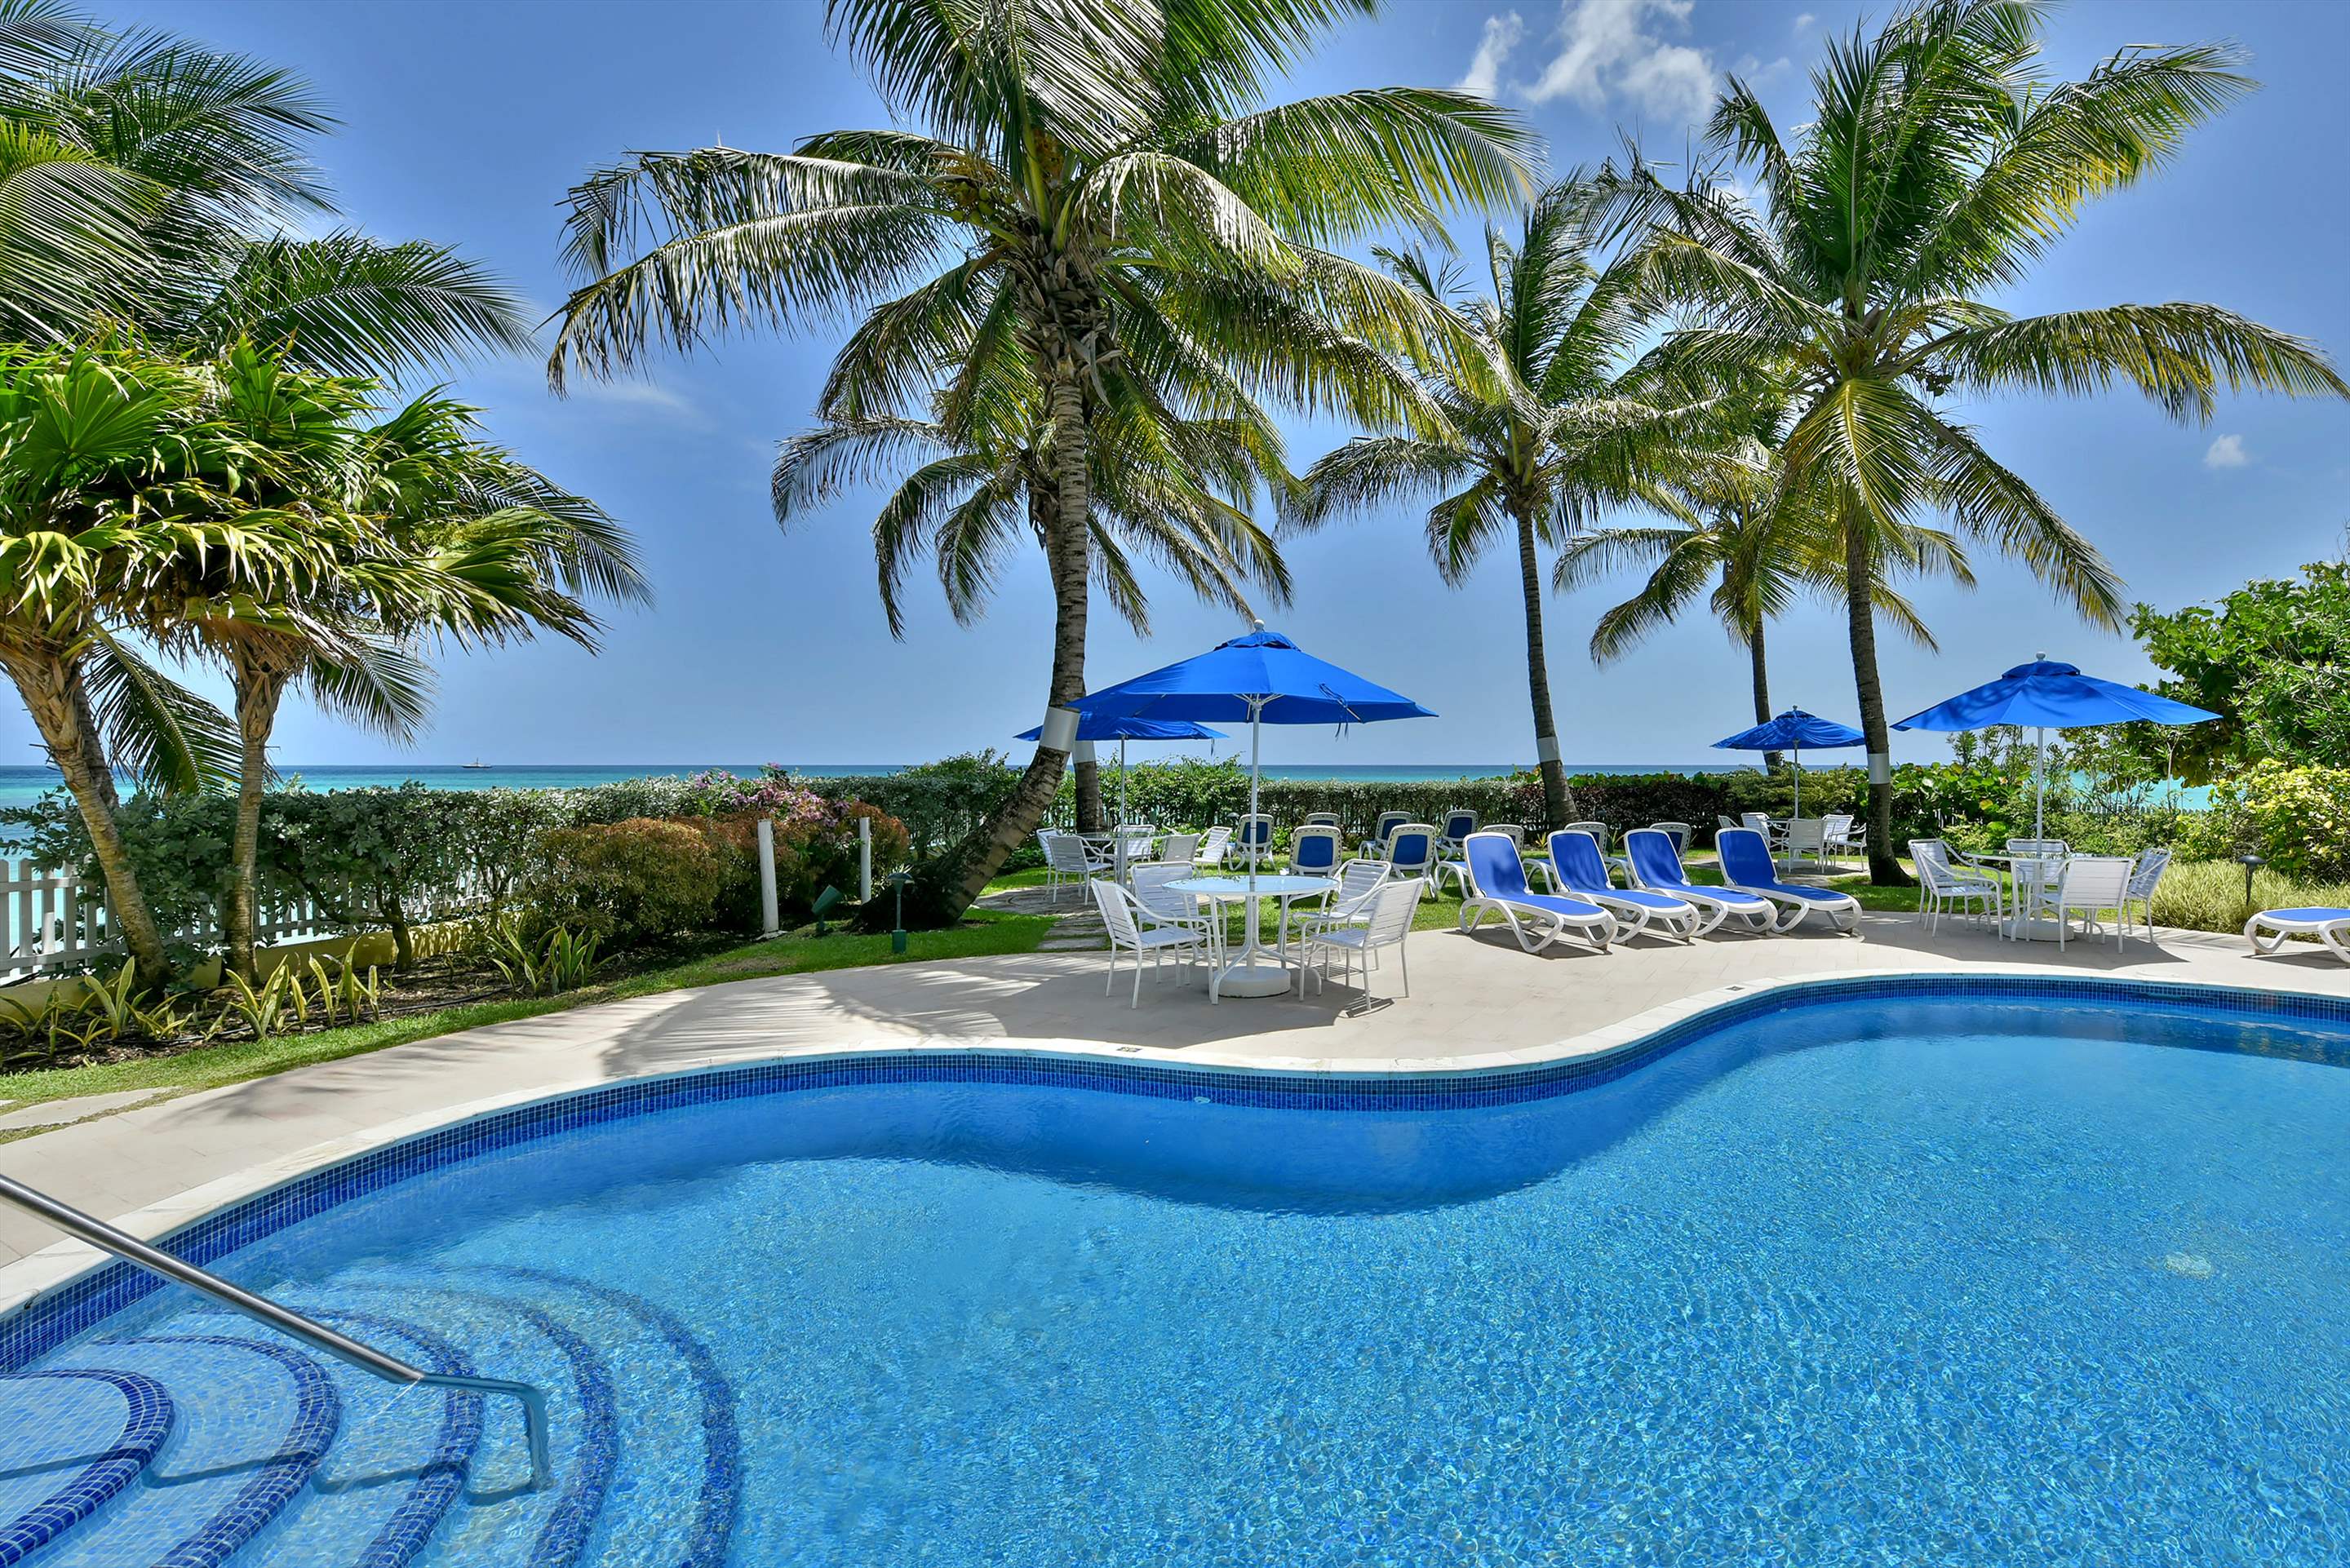 Maxwell Beach Villas 302, 2 bedroom, 2 bedroom apartment in St. Lawrence Gap & South Coast, Barbados